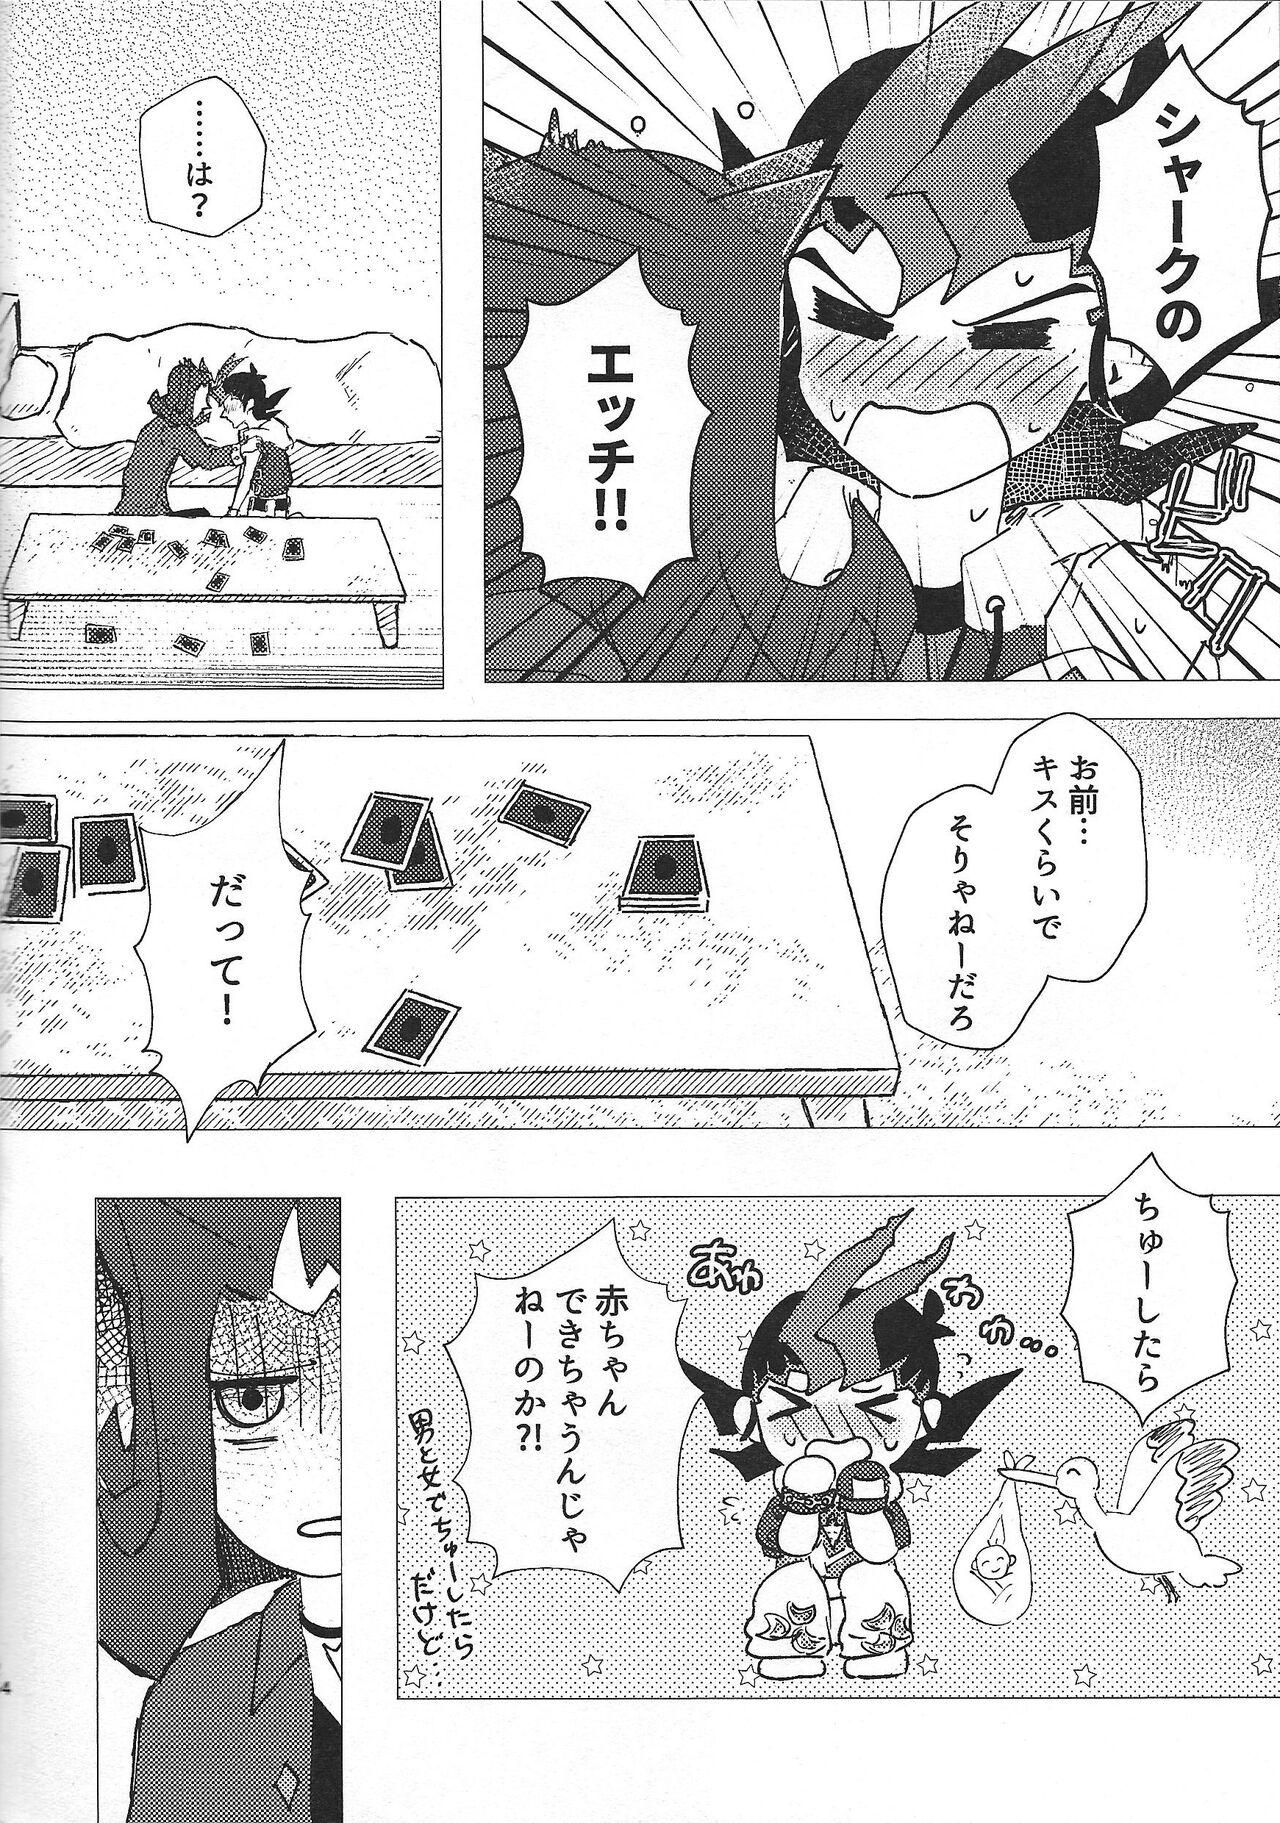 Tetas Omamori no jikan wa oshimaida! - Yu-gi-oh zexal Groupsex - Page 3